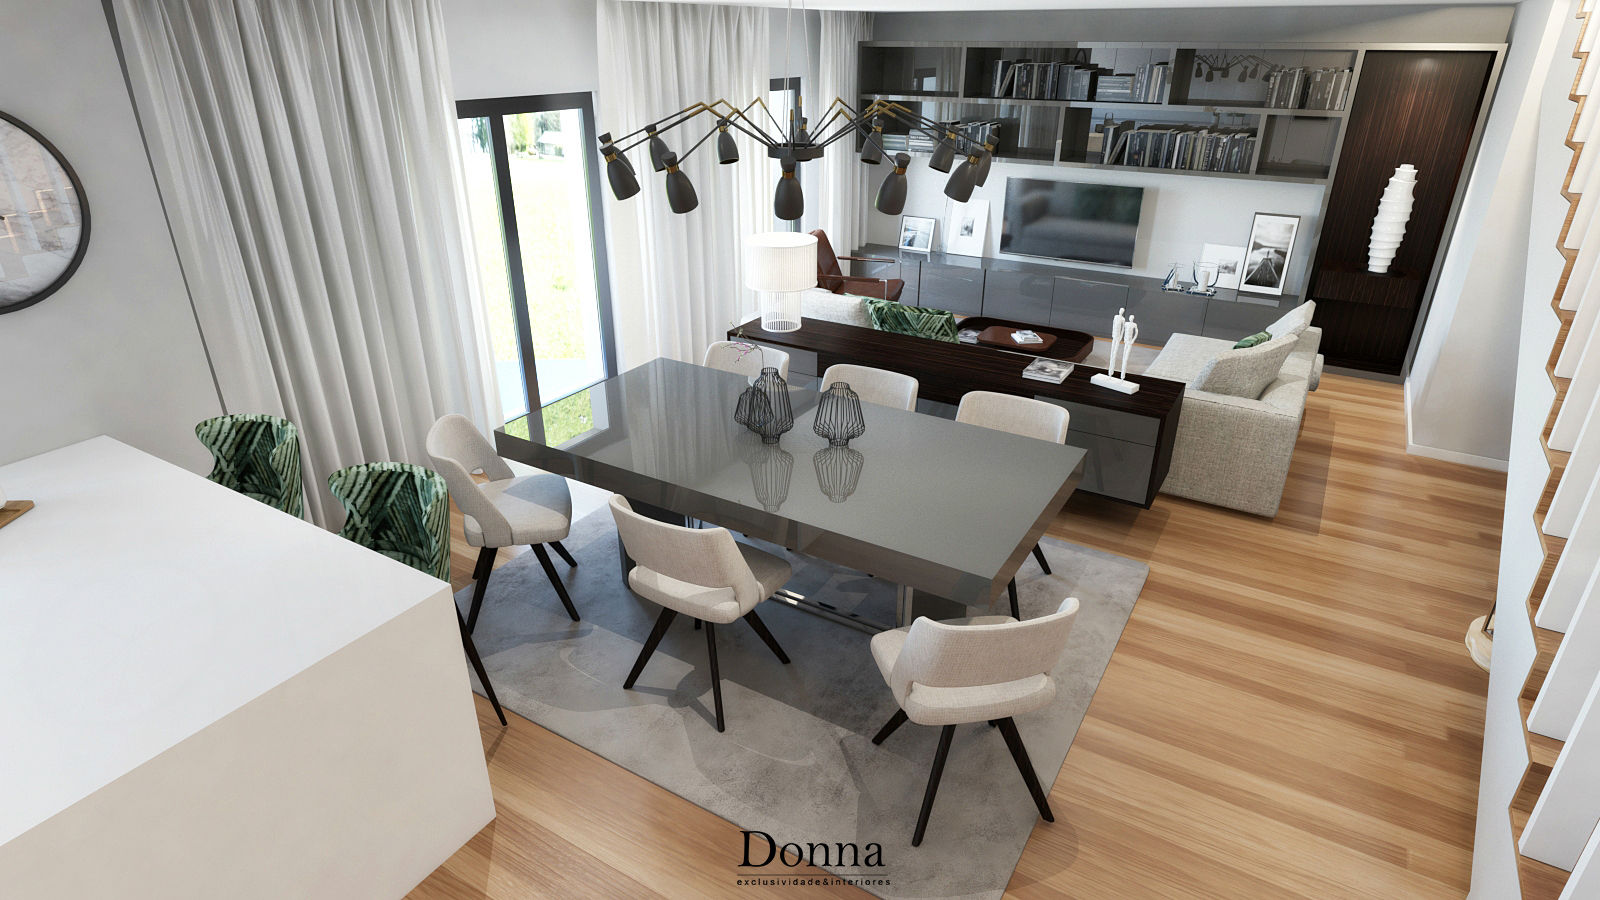 Apartamento Duplex no Porto, Donna - Exclusividade e Design Donna - Exclusividade e Design Modern dining room Lighting